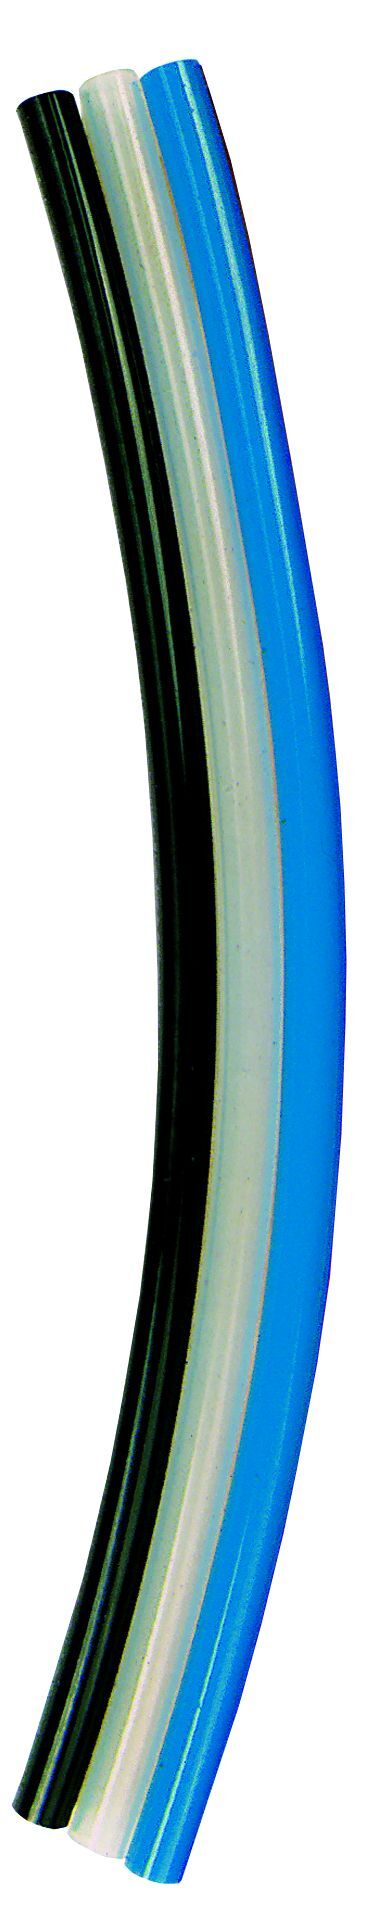 Tubo in poliuretano (PUR) blu / tubo Ø esterno 10 mm / rotolo da 50 m 113708